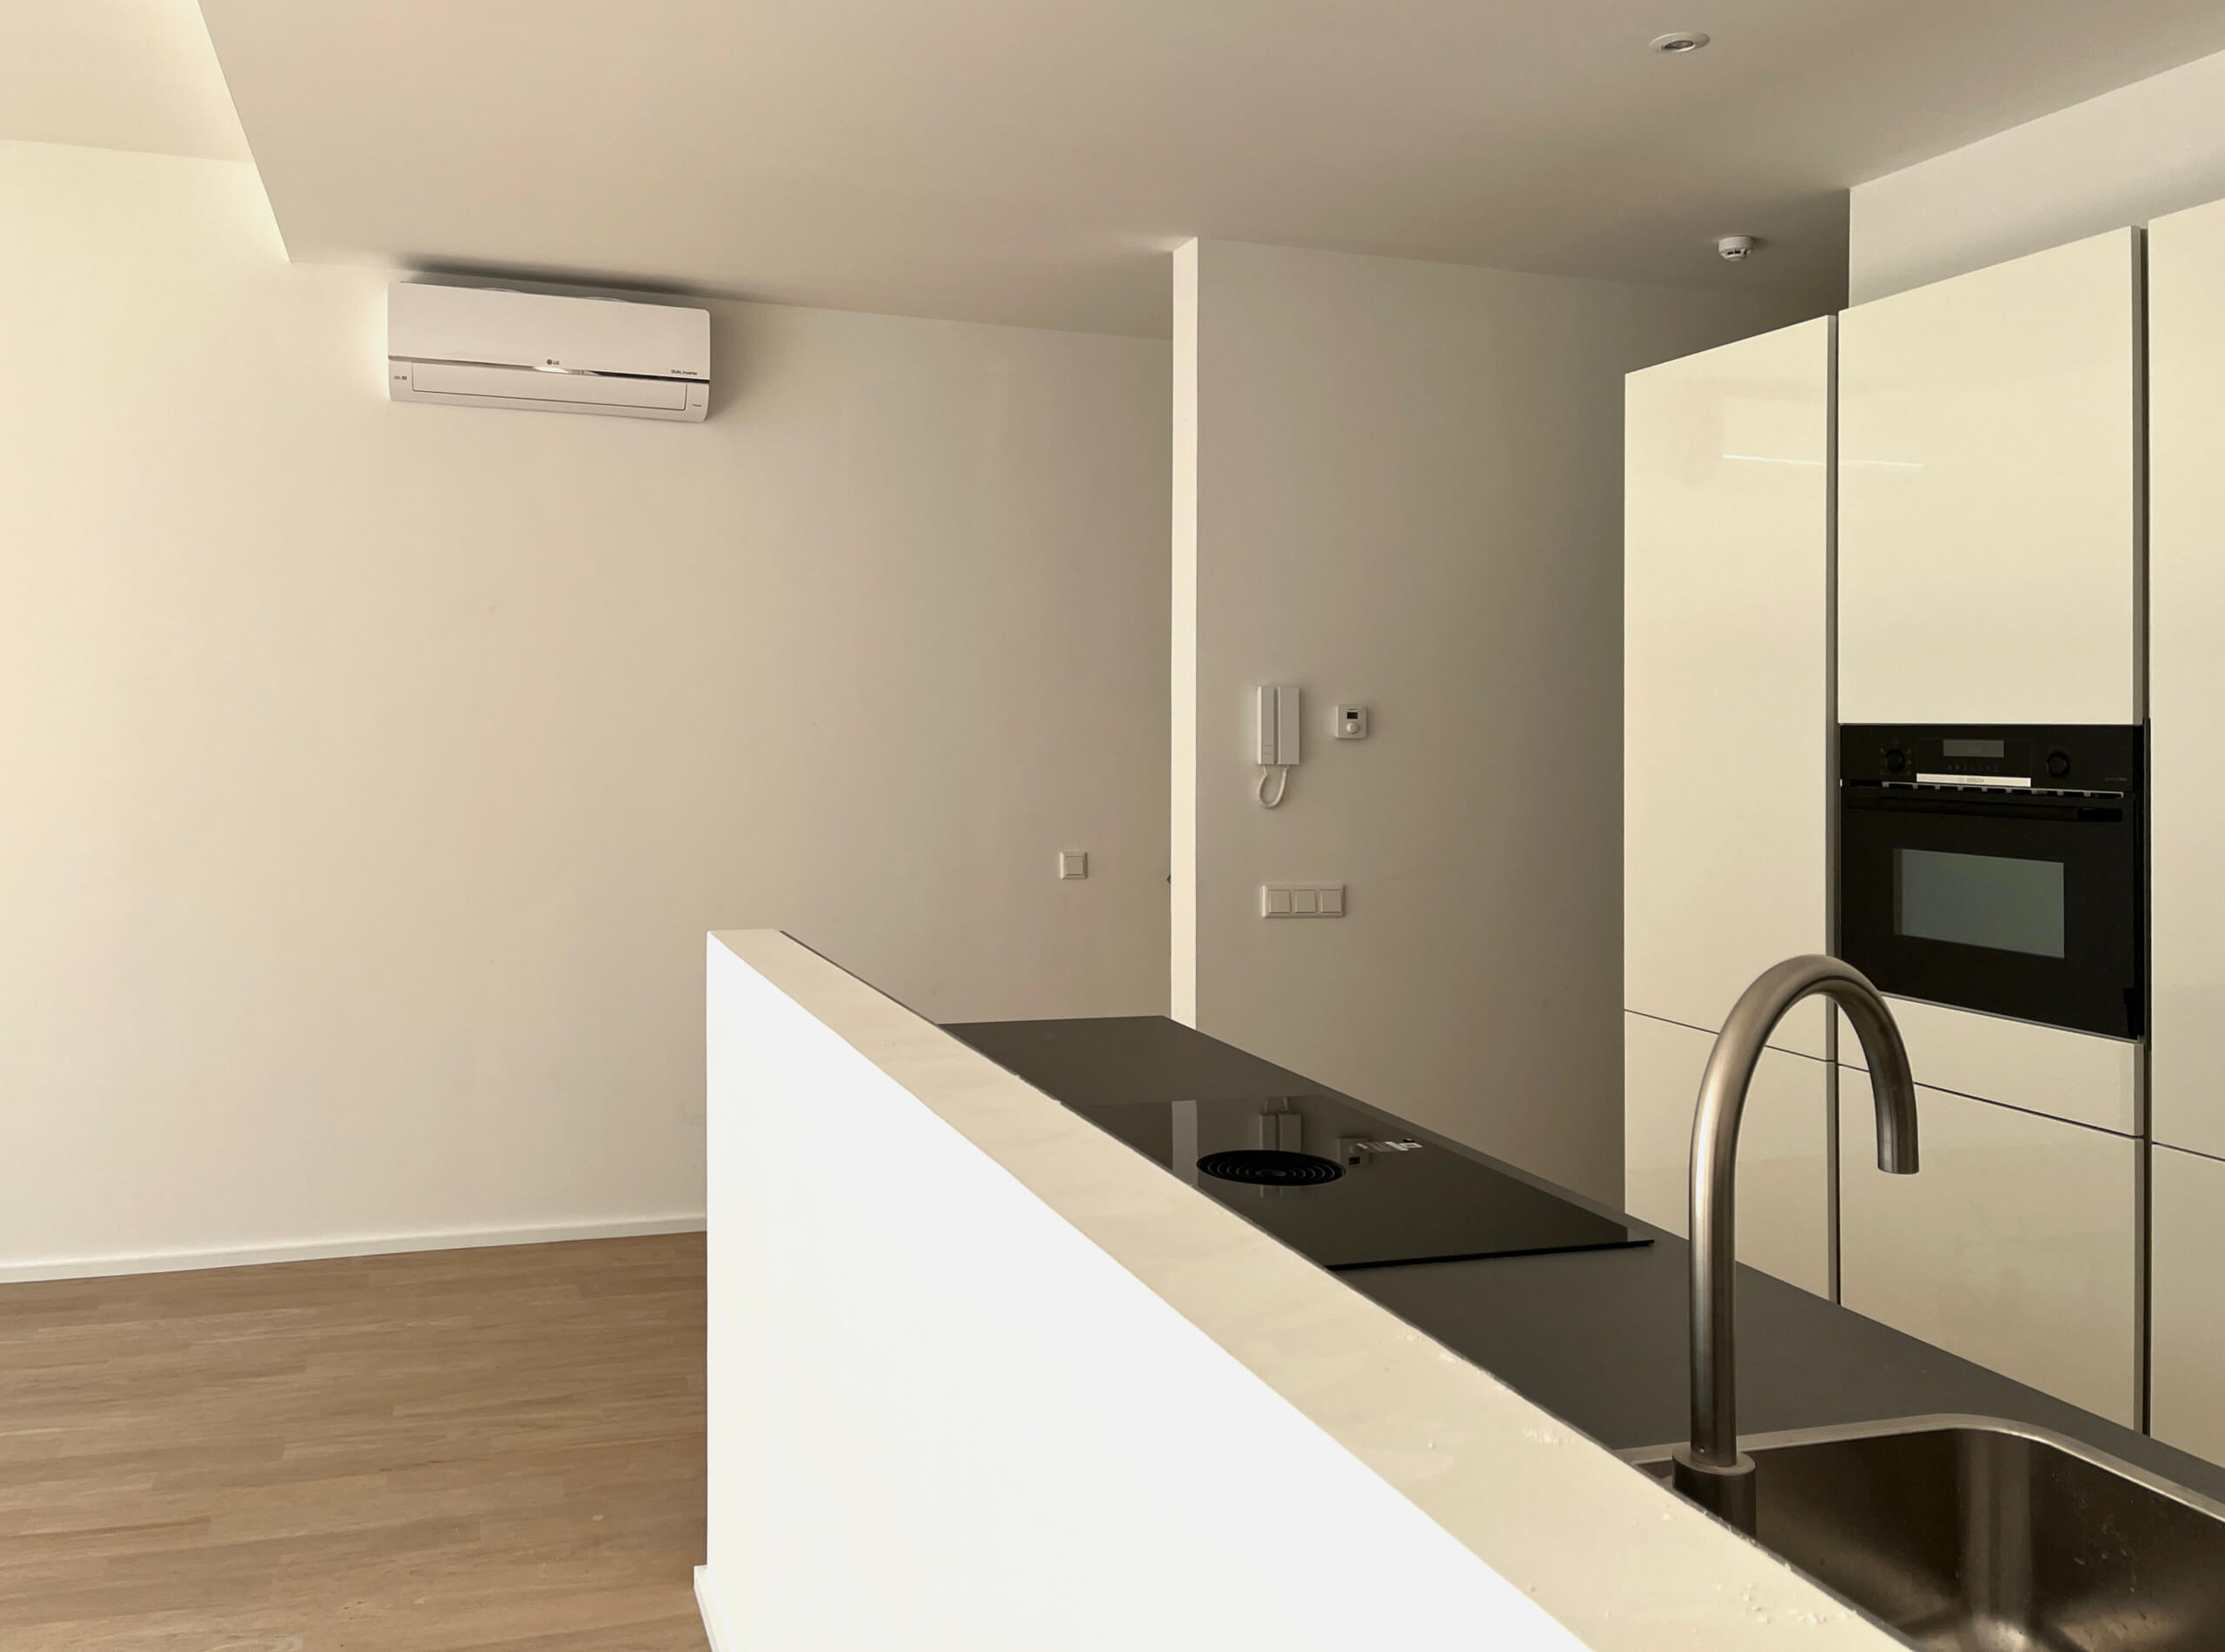 De voorste woonkamer kan via een airco bijverwarmd worden.